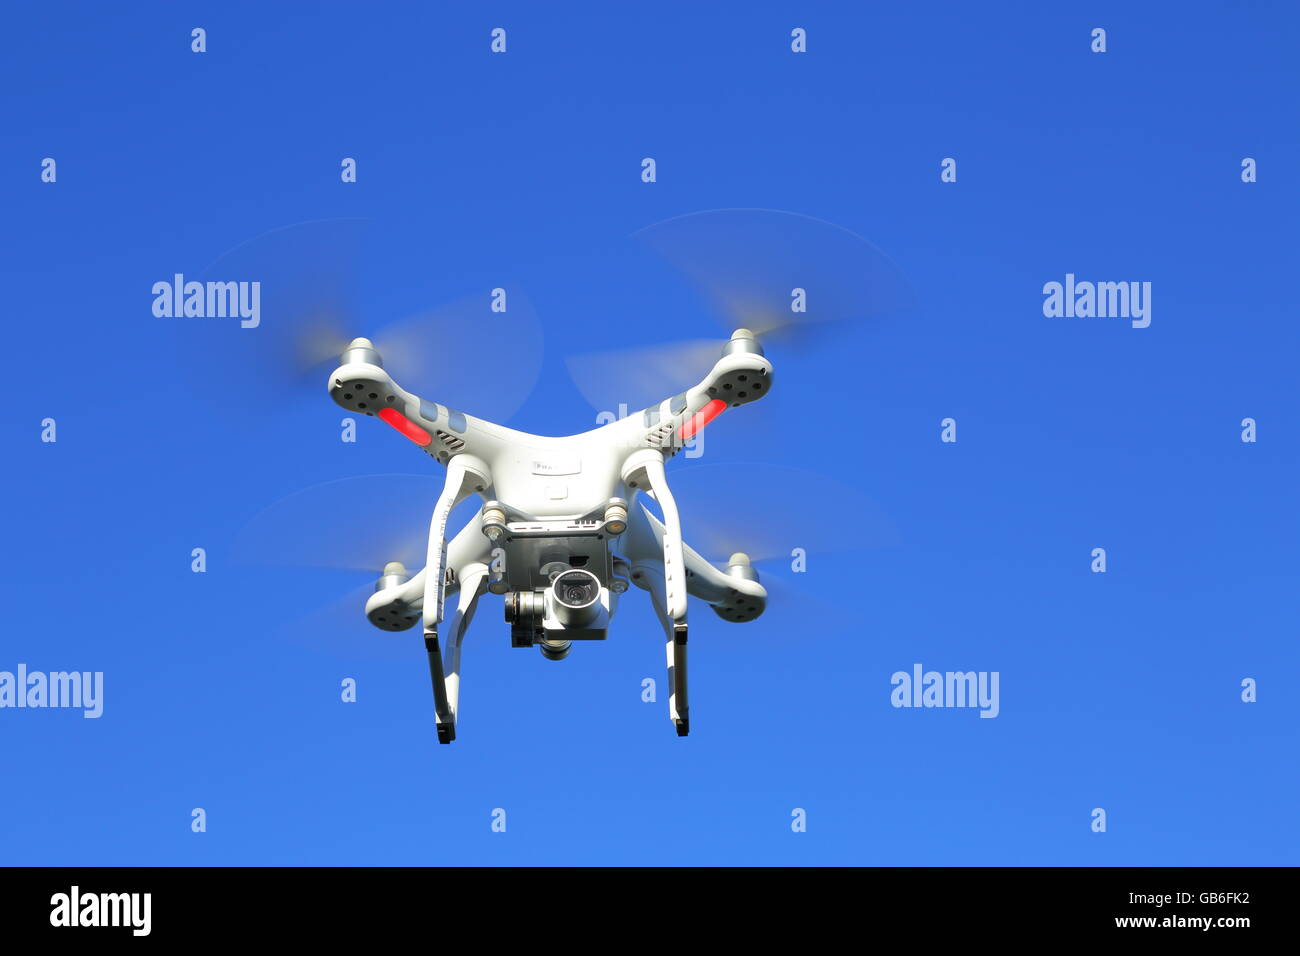 Un avión teledirigido, o UAV, o quadcopter, en vuelo bajo un intenso cielo azul. Foto de stock